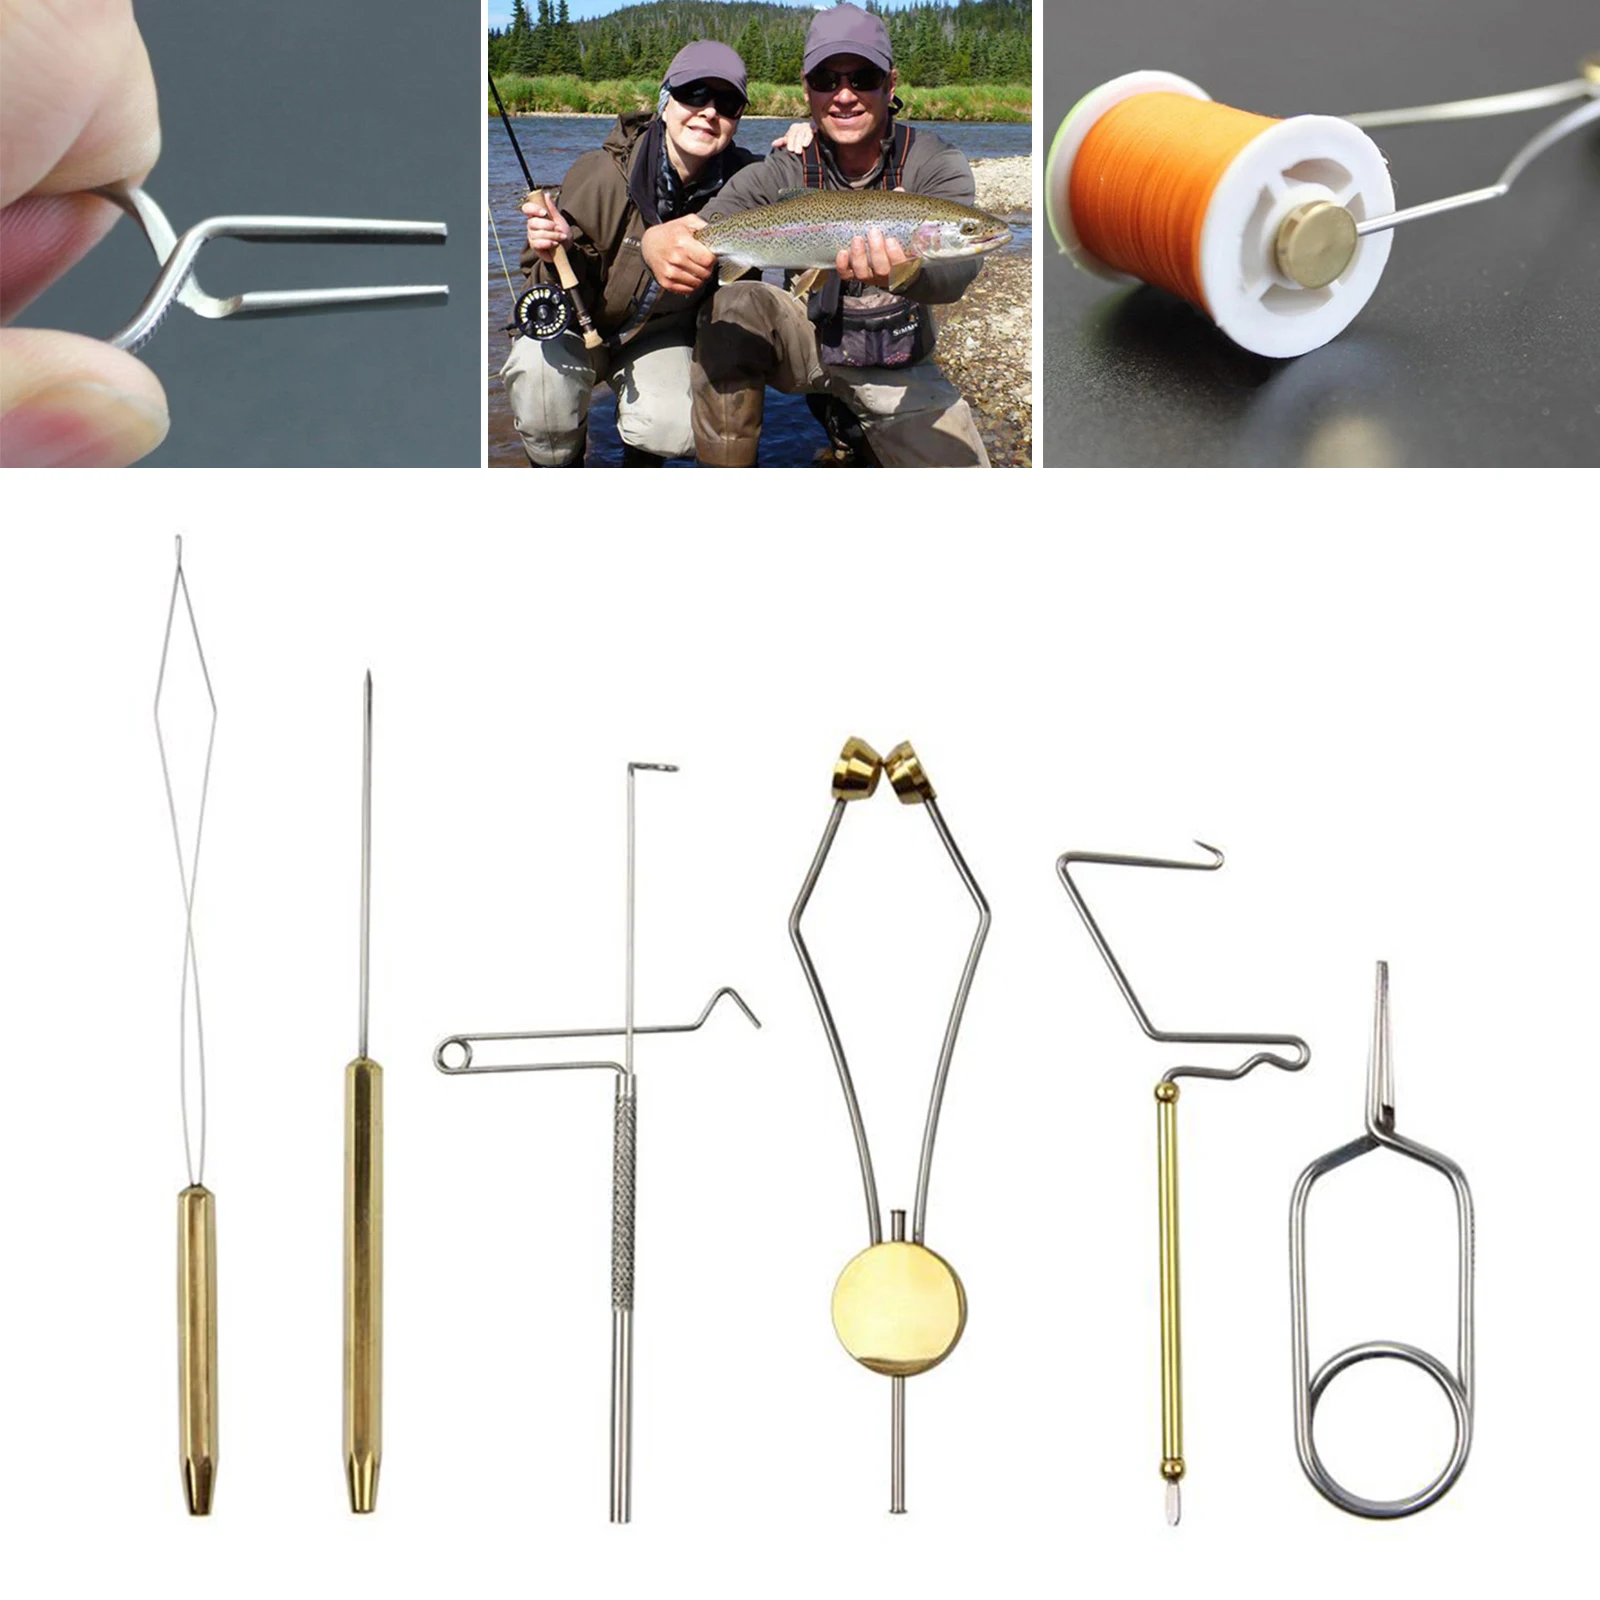 6x Fly Tying Tools Fishing Bodkin Dubbing Needle Brass Bobbin Threader